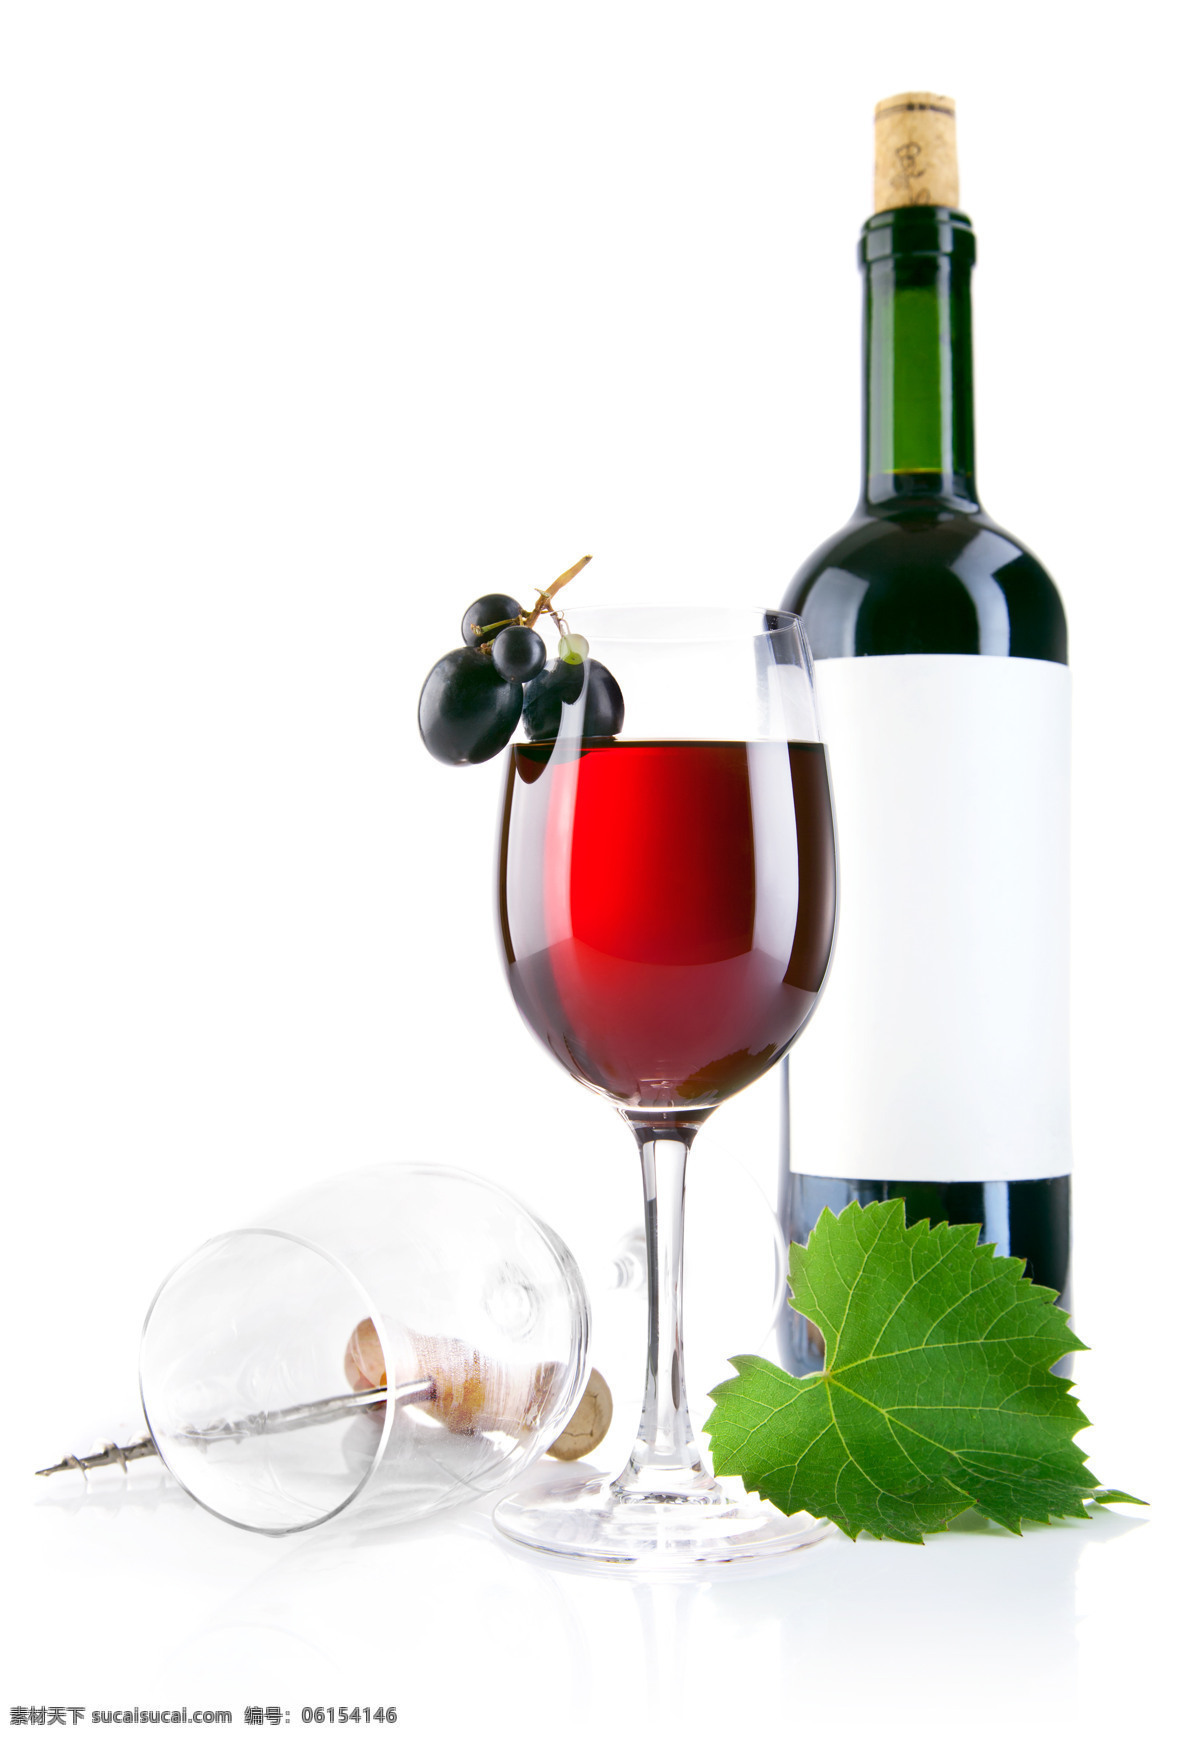 葡萄红酒 葡萄与葡萄酒 酒 葡萄酒 红酒 杯子 葡萄 餐饮美食 饮料酒水 葡萄酒红酒 摄影图 酒水饮料 白色